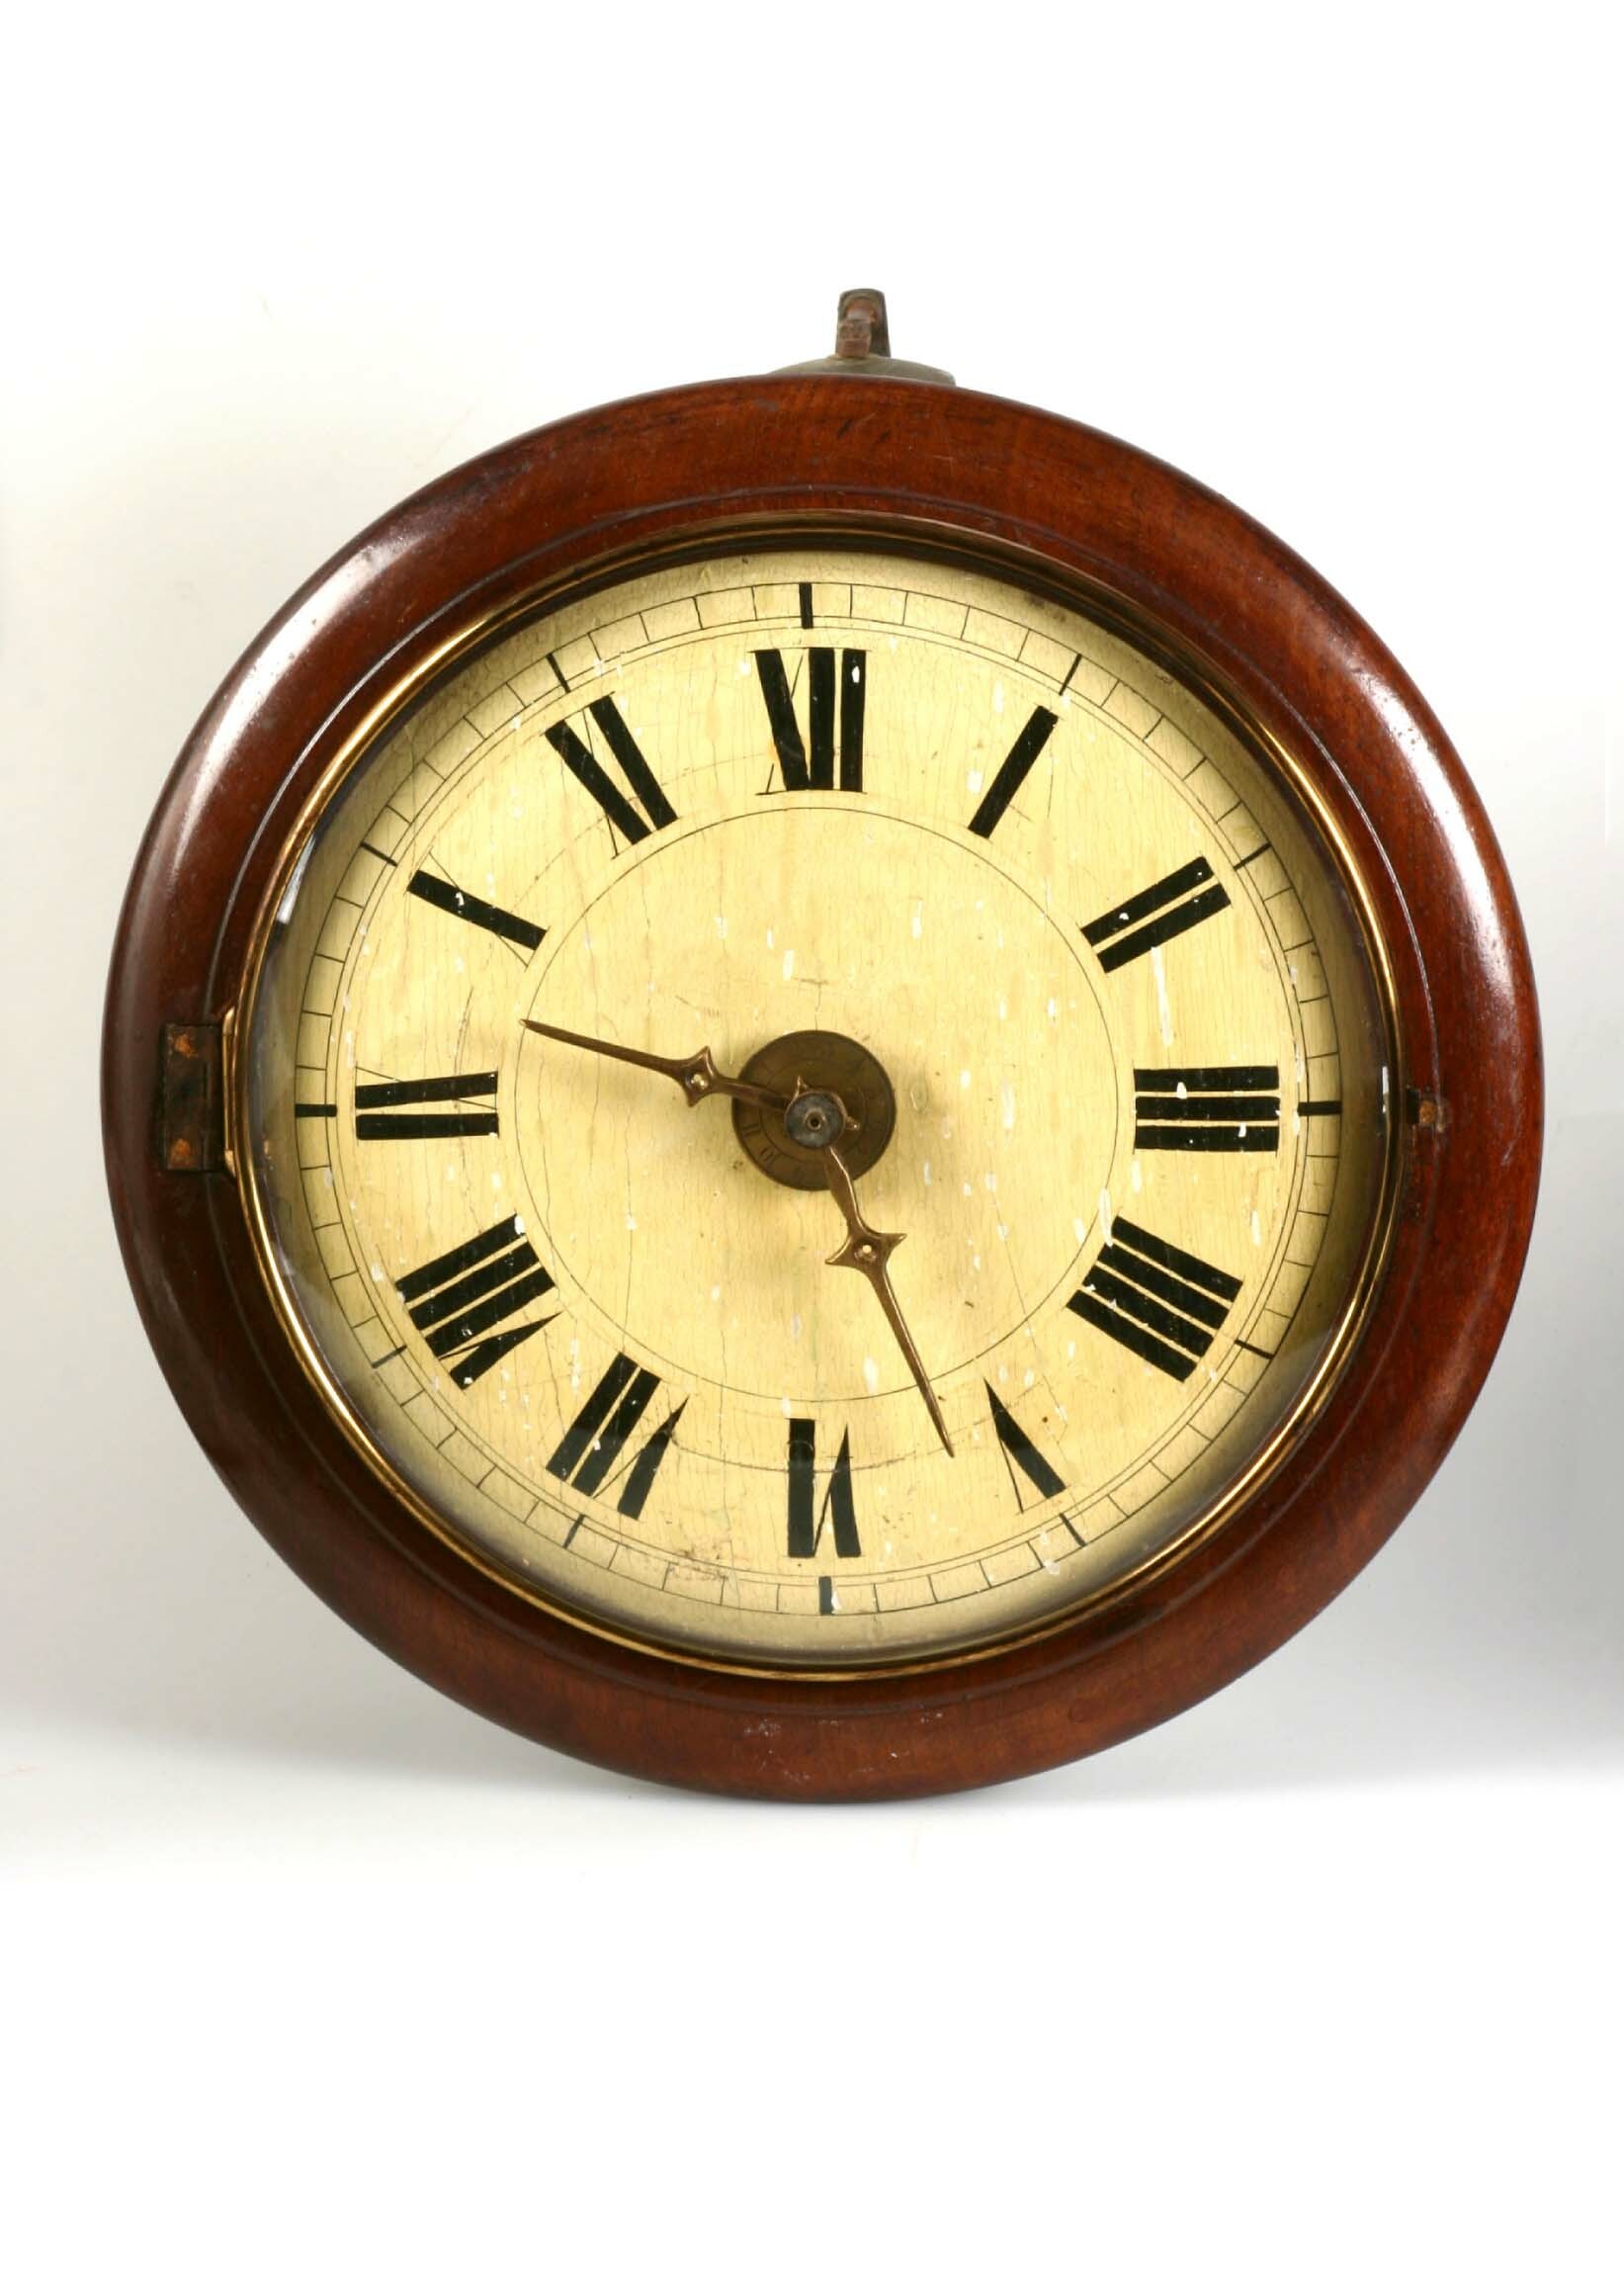 Rundrahmenuhr, Bäuerle, St. Georgen, um 1900 (Deutsches Uhrenmuseum CC BY-SA)